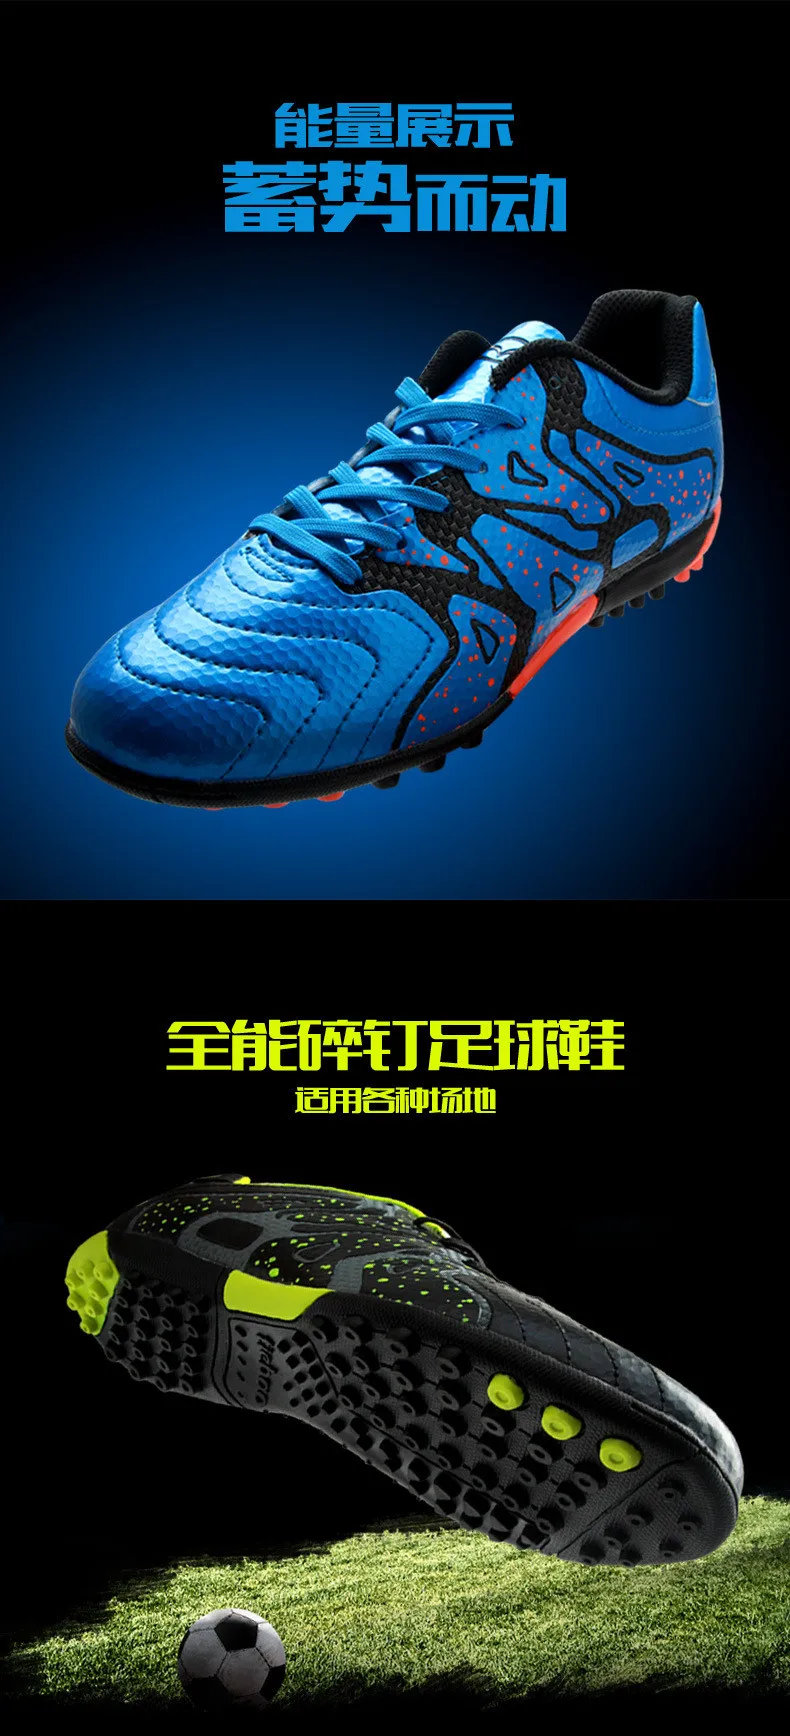 TIEBAO/футбольная обувь; футбольные бутсы; кроссовки для мужчин и женщин; спортивная обувь для тренировок; chuteira futsal; бутсы; Botas De Futbol